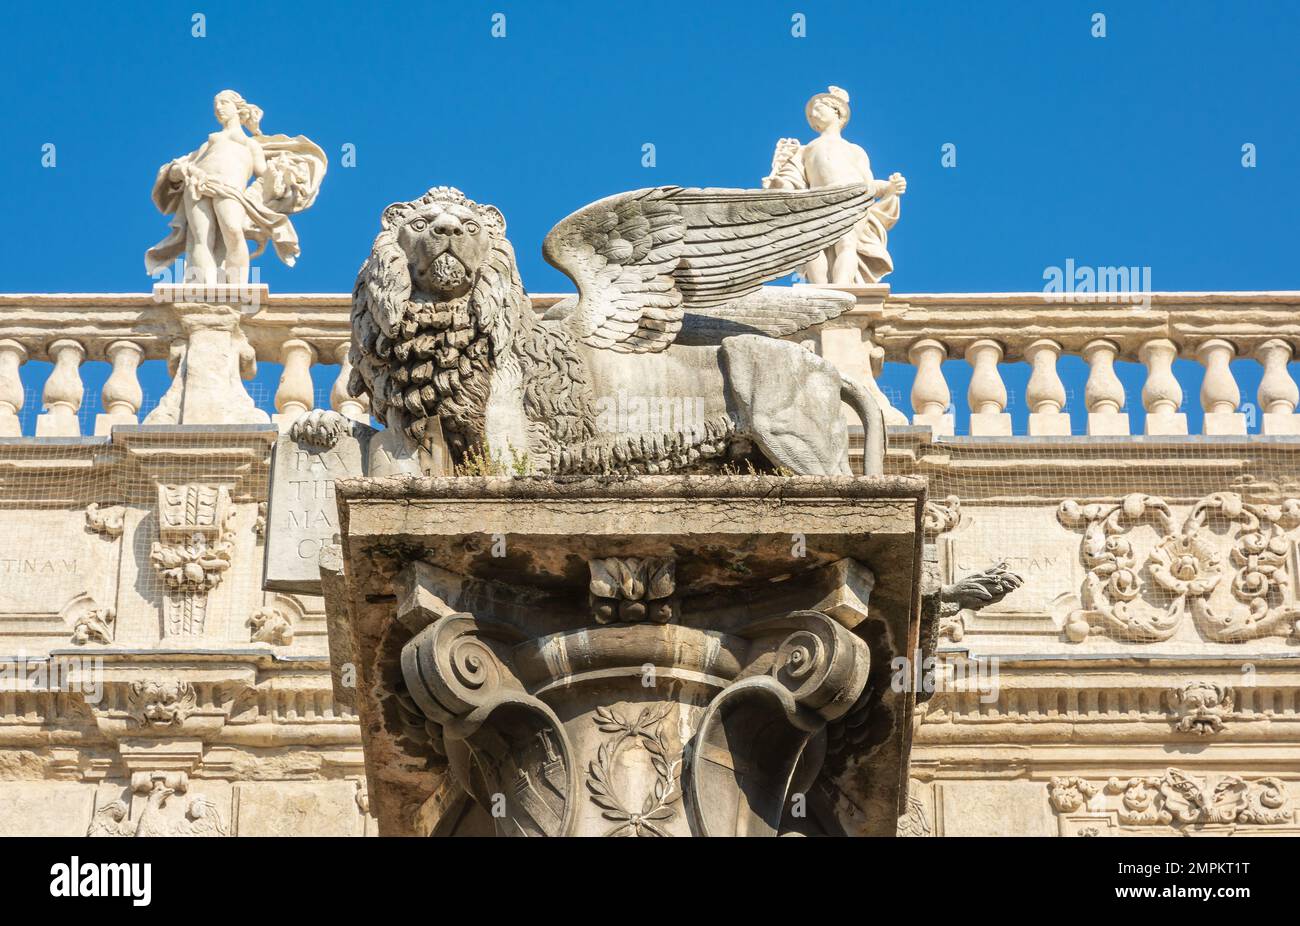 Palazzo Maffei di architettura barocca, costruito nel 1668 e di fronte all'edificio la statua del leone alato di San Marco - Verona, Italia settentrionale Foto Stock